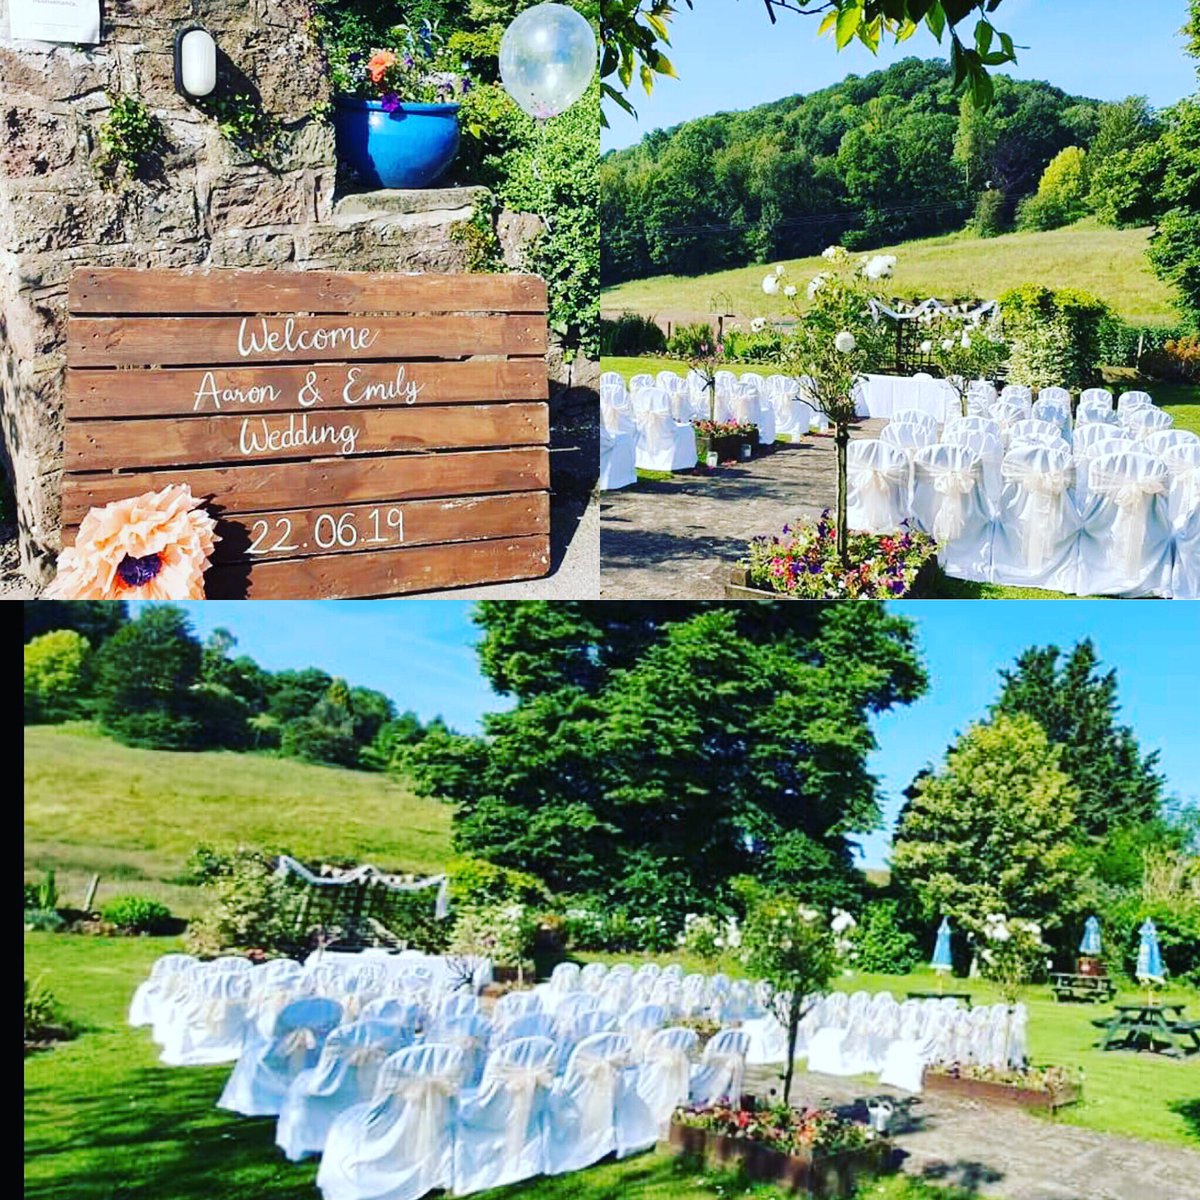 We love an outdoor wedding. #sunshineatlast #outdoorwedding #weddings #countrygardenwedding